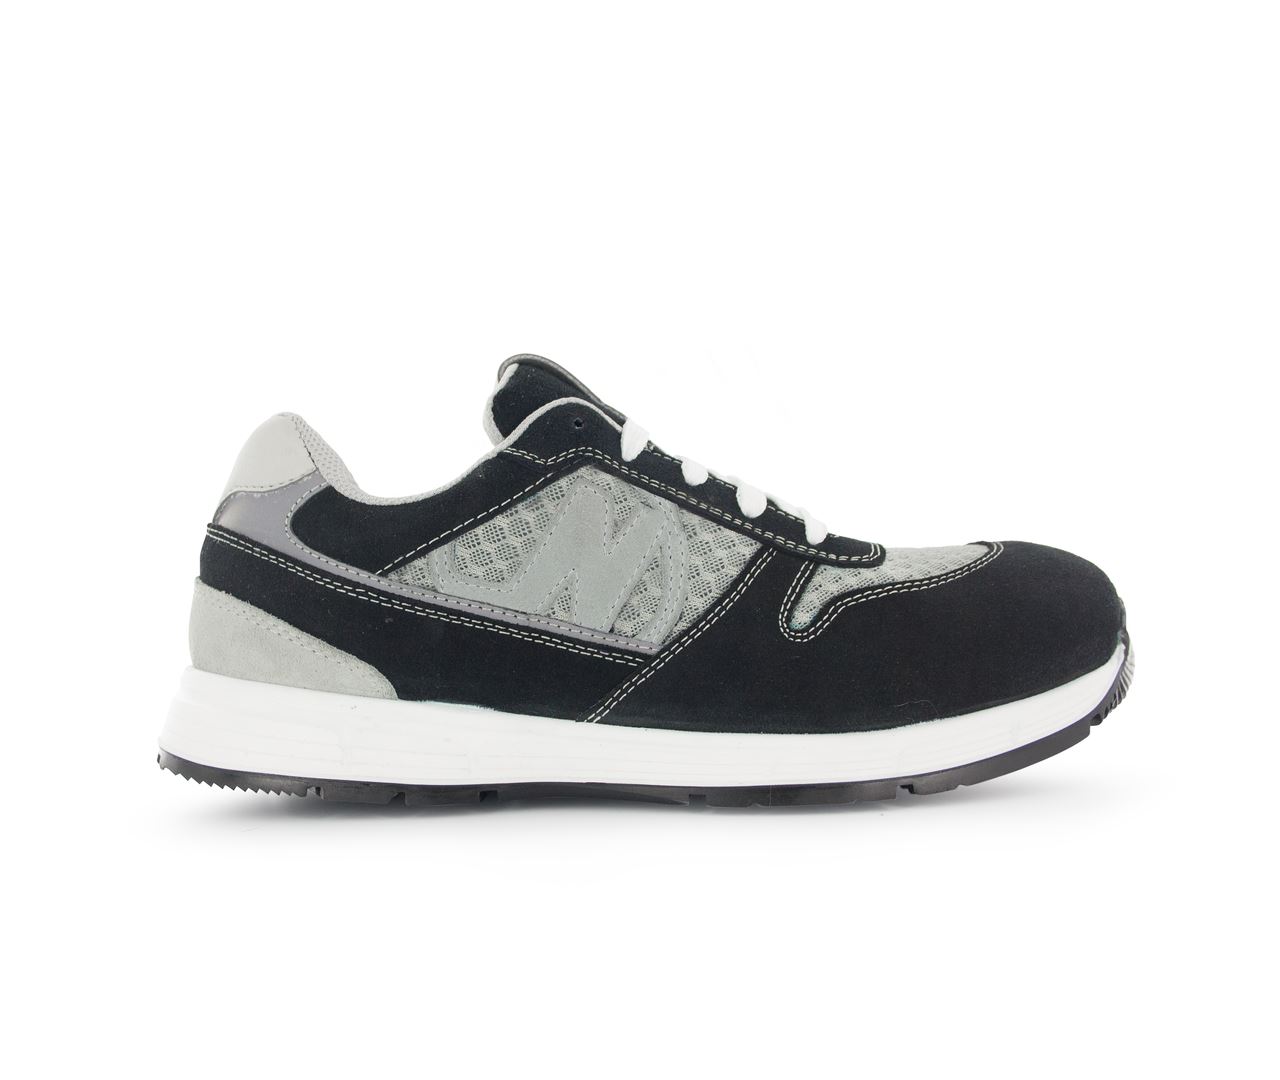 Chaussure de sécurité noir/gris Run Soft T.41 - Nord'Ways - RUN000241000NOGR